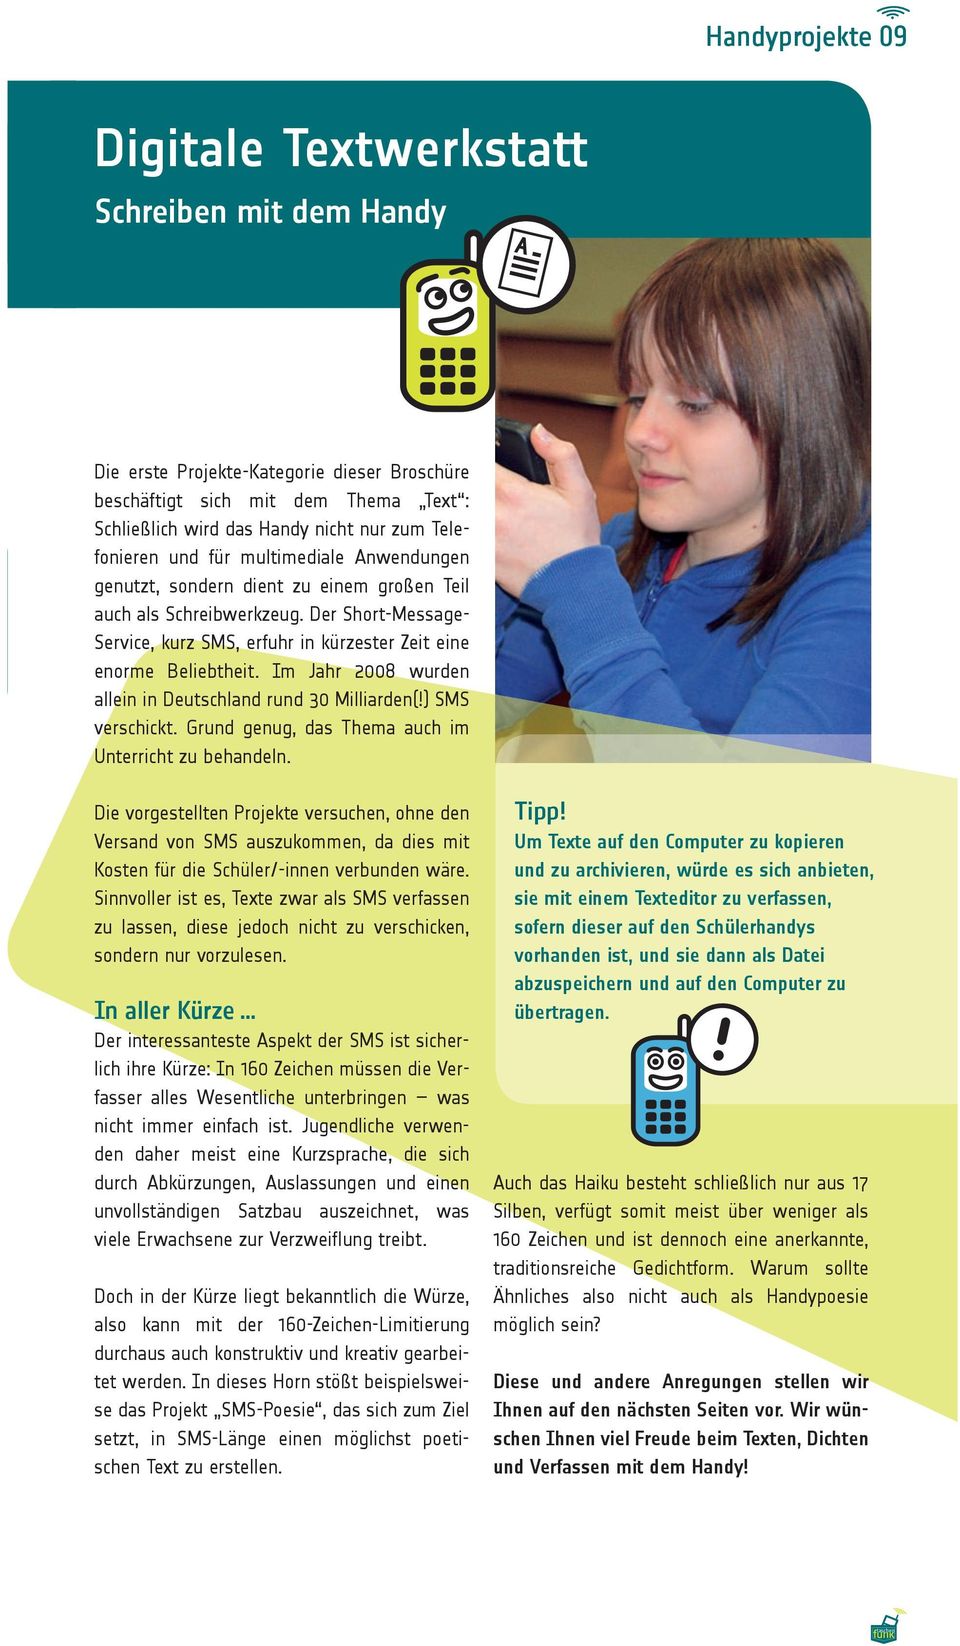 Der Short-Message- Service, kurz SMS, erfuhr in kürzester Zeit eine enorme Beliebtheit. Im Jahr 2008 wurden allein in Deutschland rund 30 Milliarden(!) SMS verschickt.